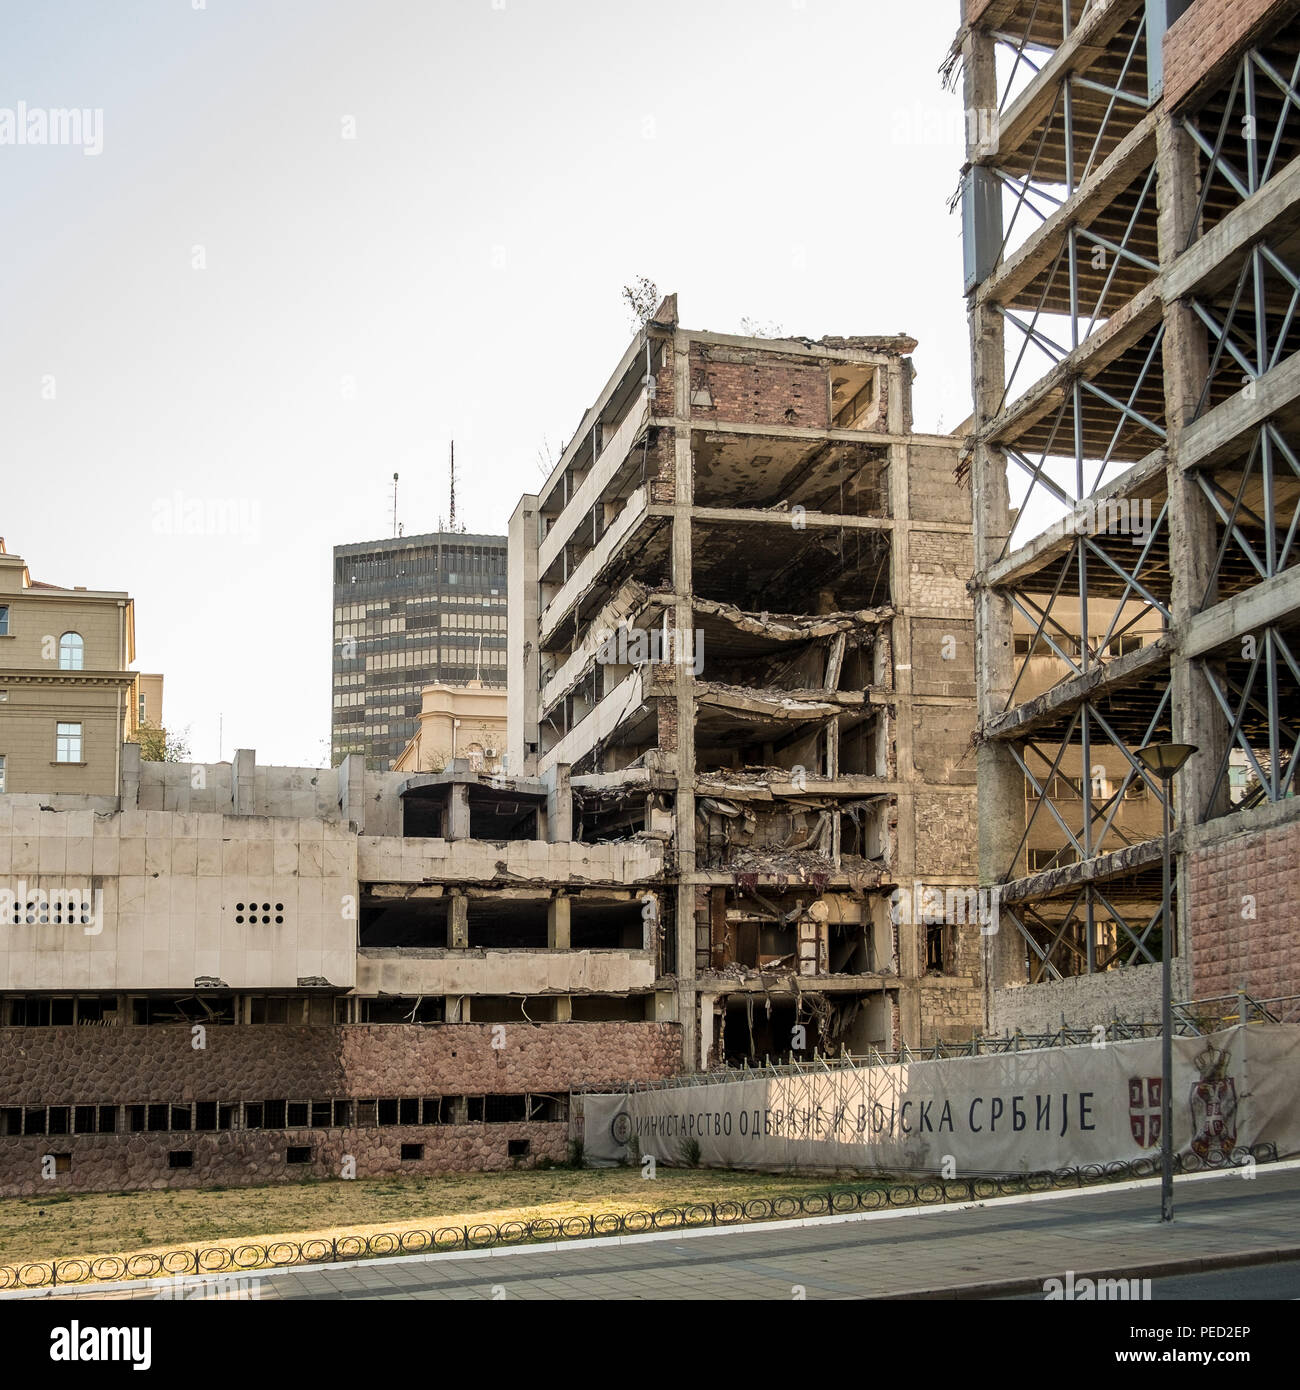 Belgrad, Serbien. August 27, 2017. Allgemeine Streitkräfte Personal Gebäude, das im Krieg von 1999 Balkan bombardiert, immer noch als Denkmal zerstört. Stockfoto